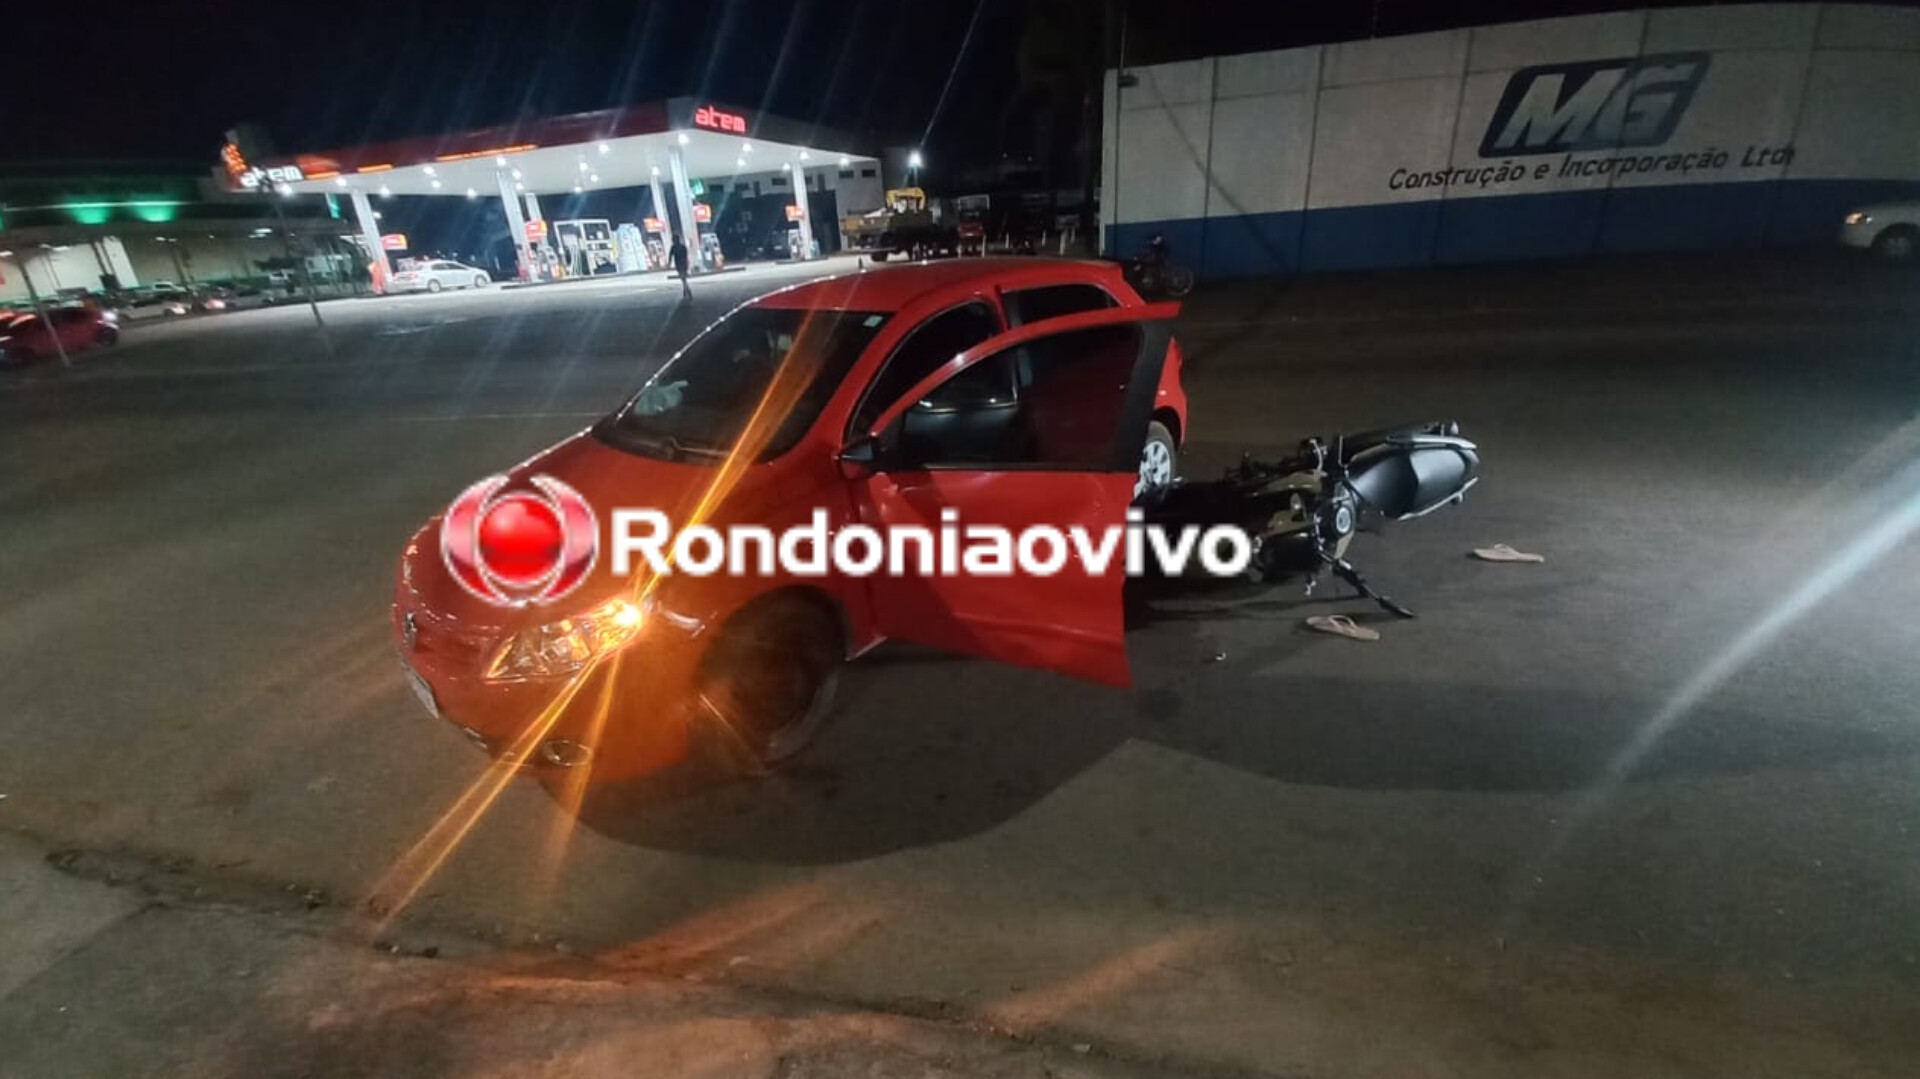 FRATURA NA PERNA: Casal em moto sofre acidente na Avenida Rio de Janeiro 